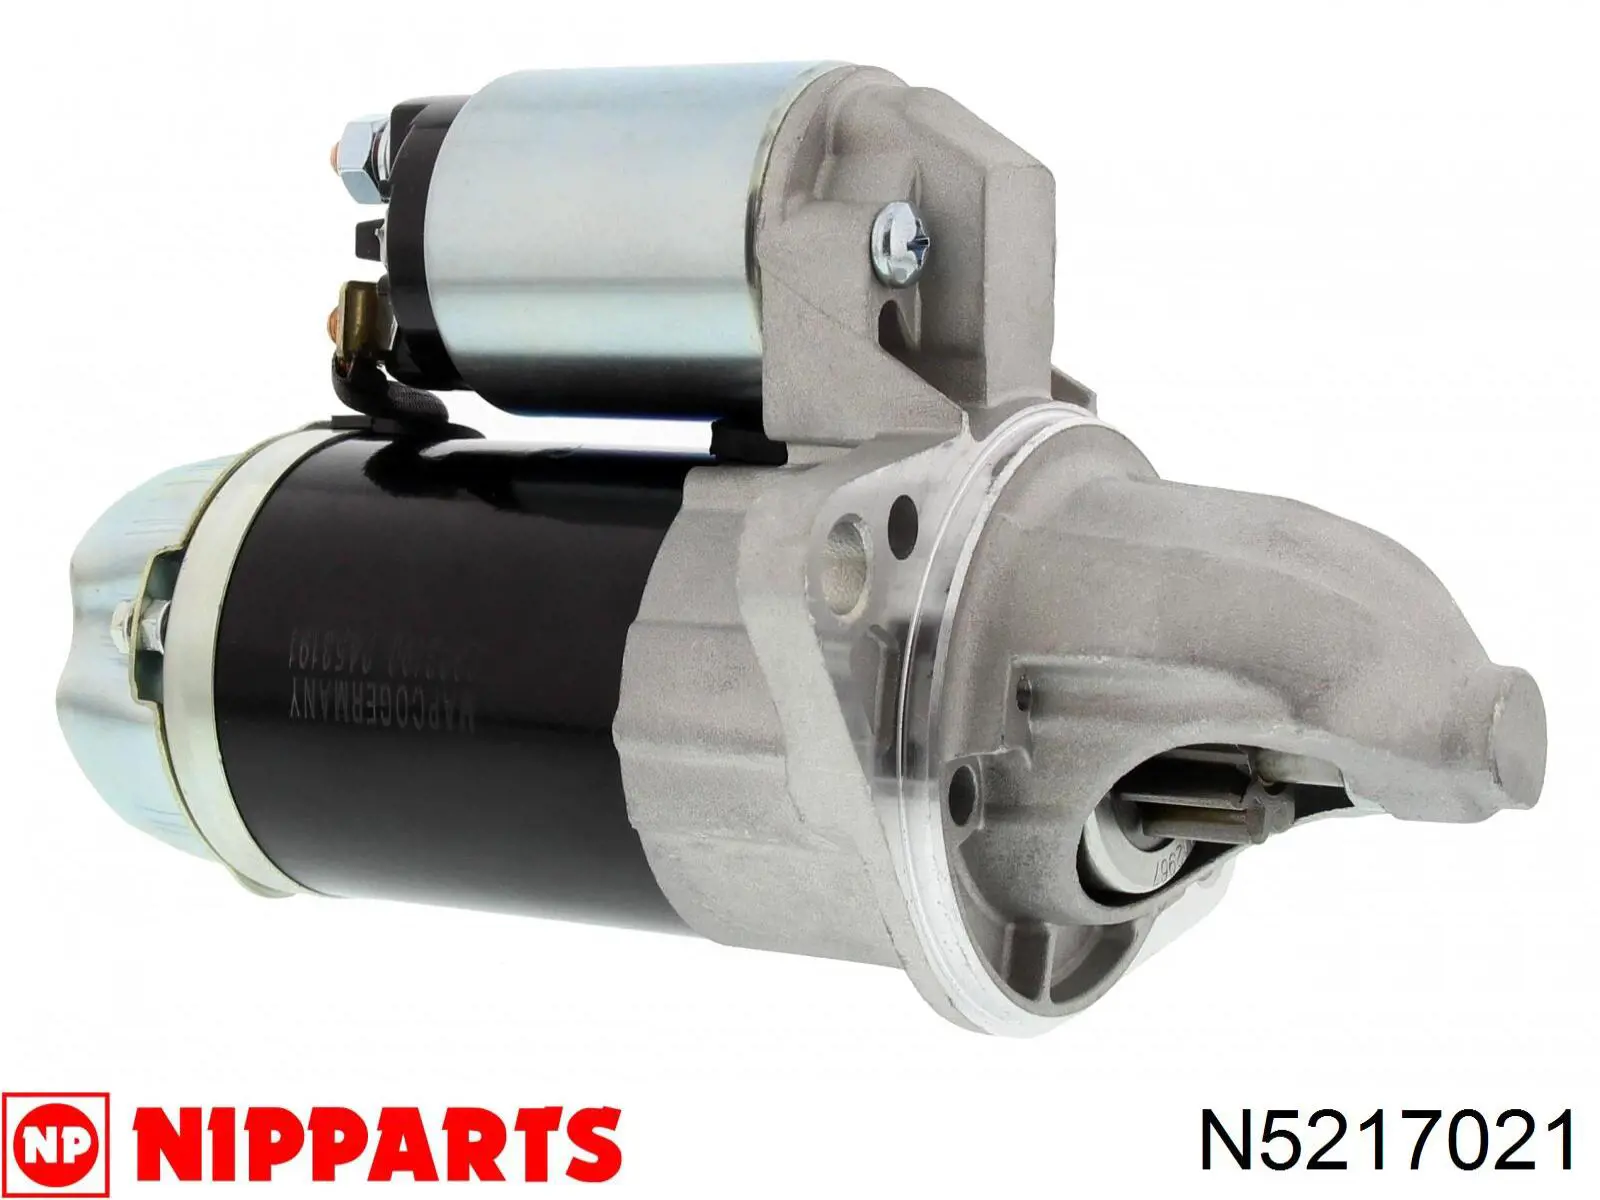 N5217021 Nipparts motor de arranque